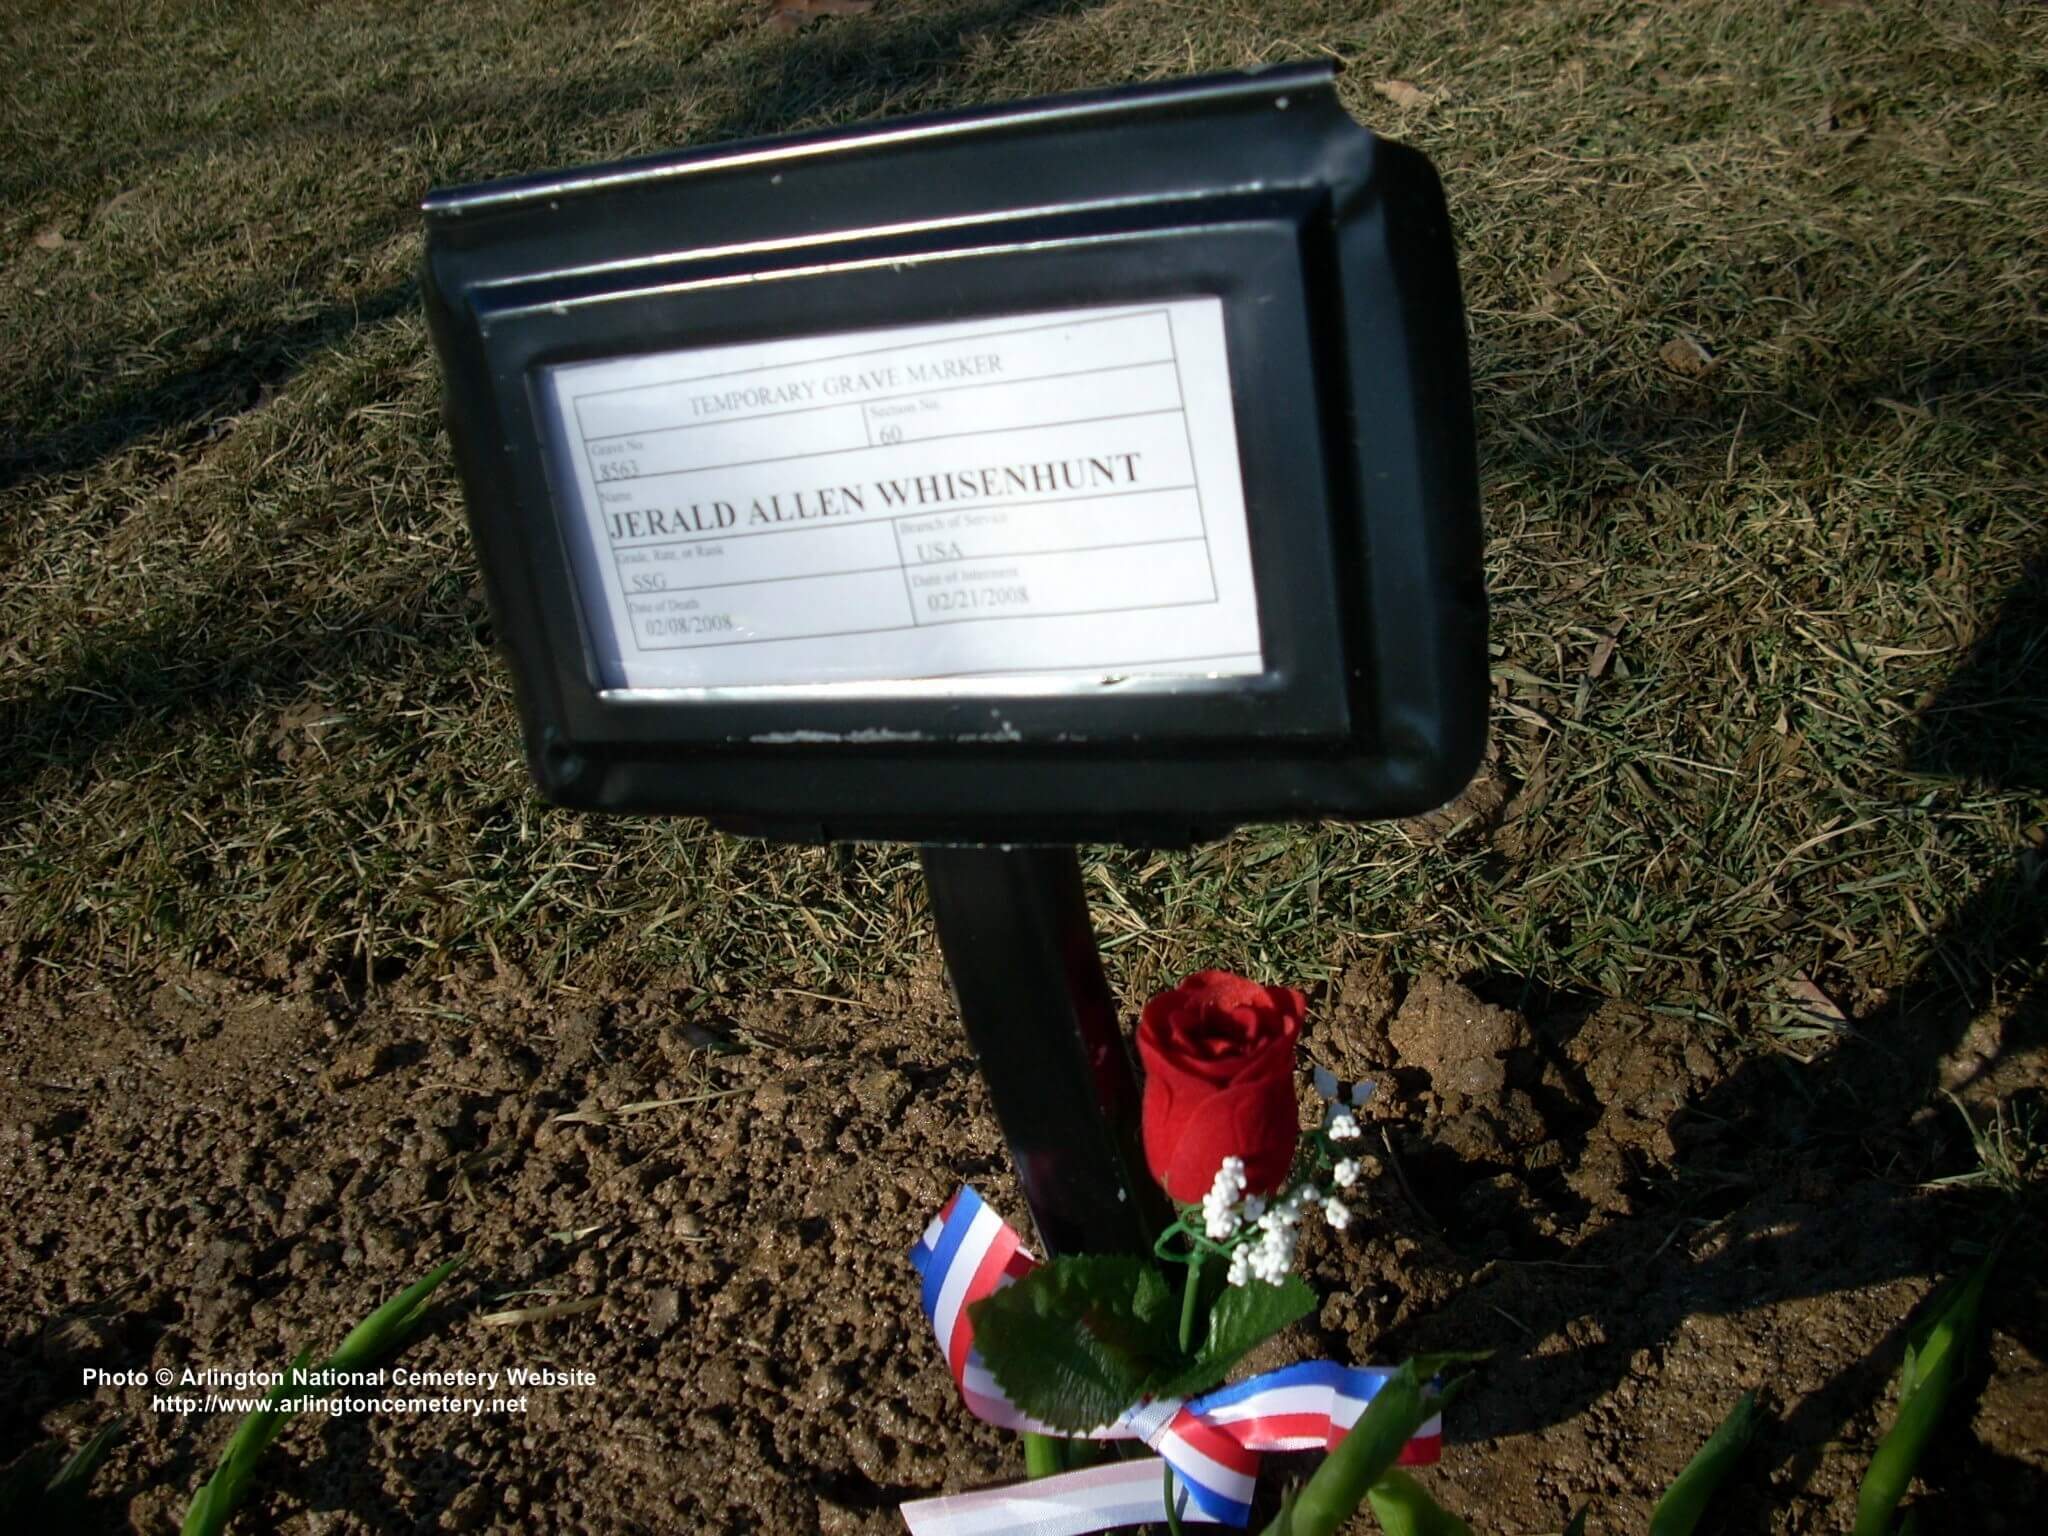 jawhisenhunt-gravesite-photo-march-2008-001